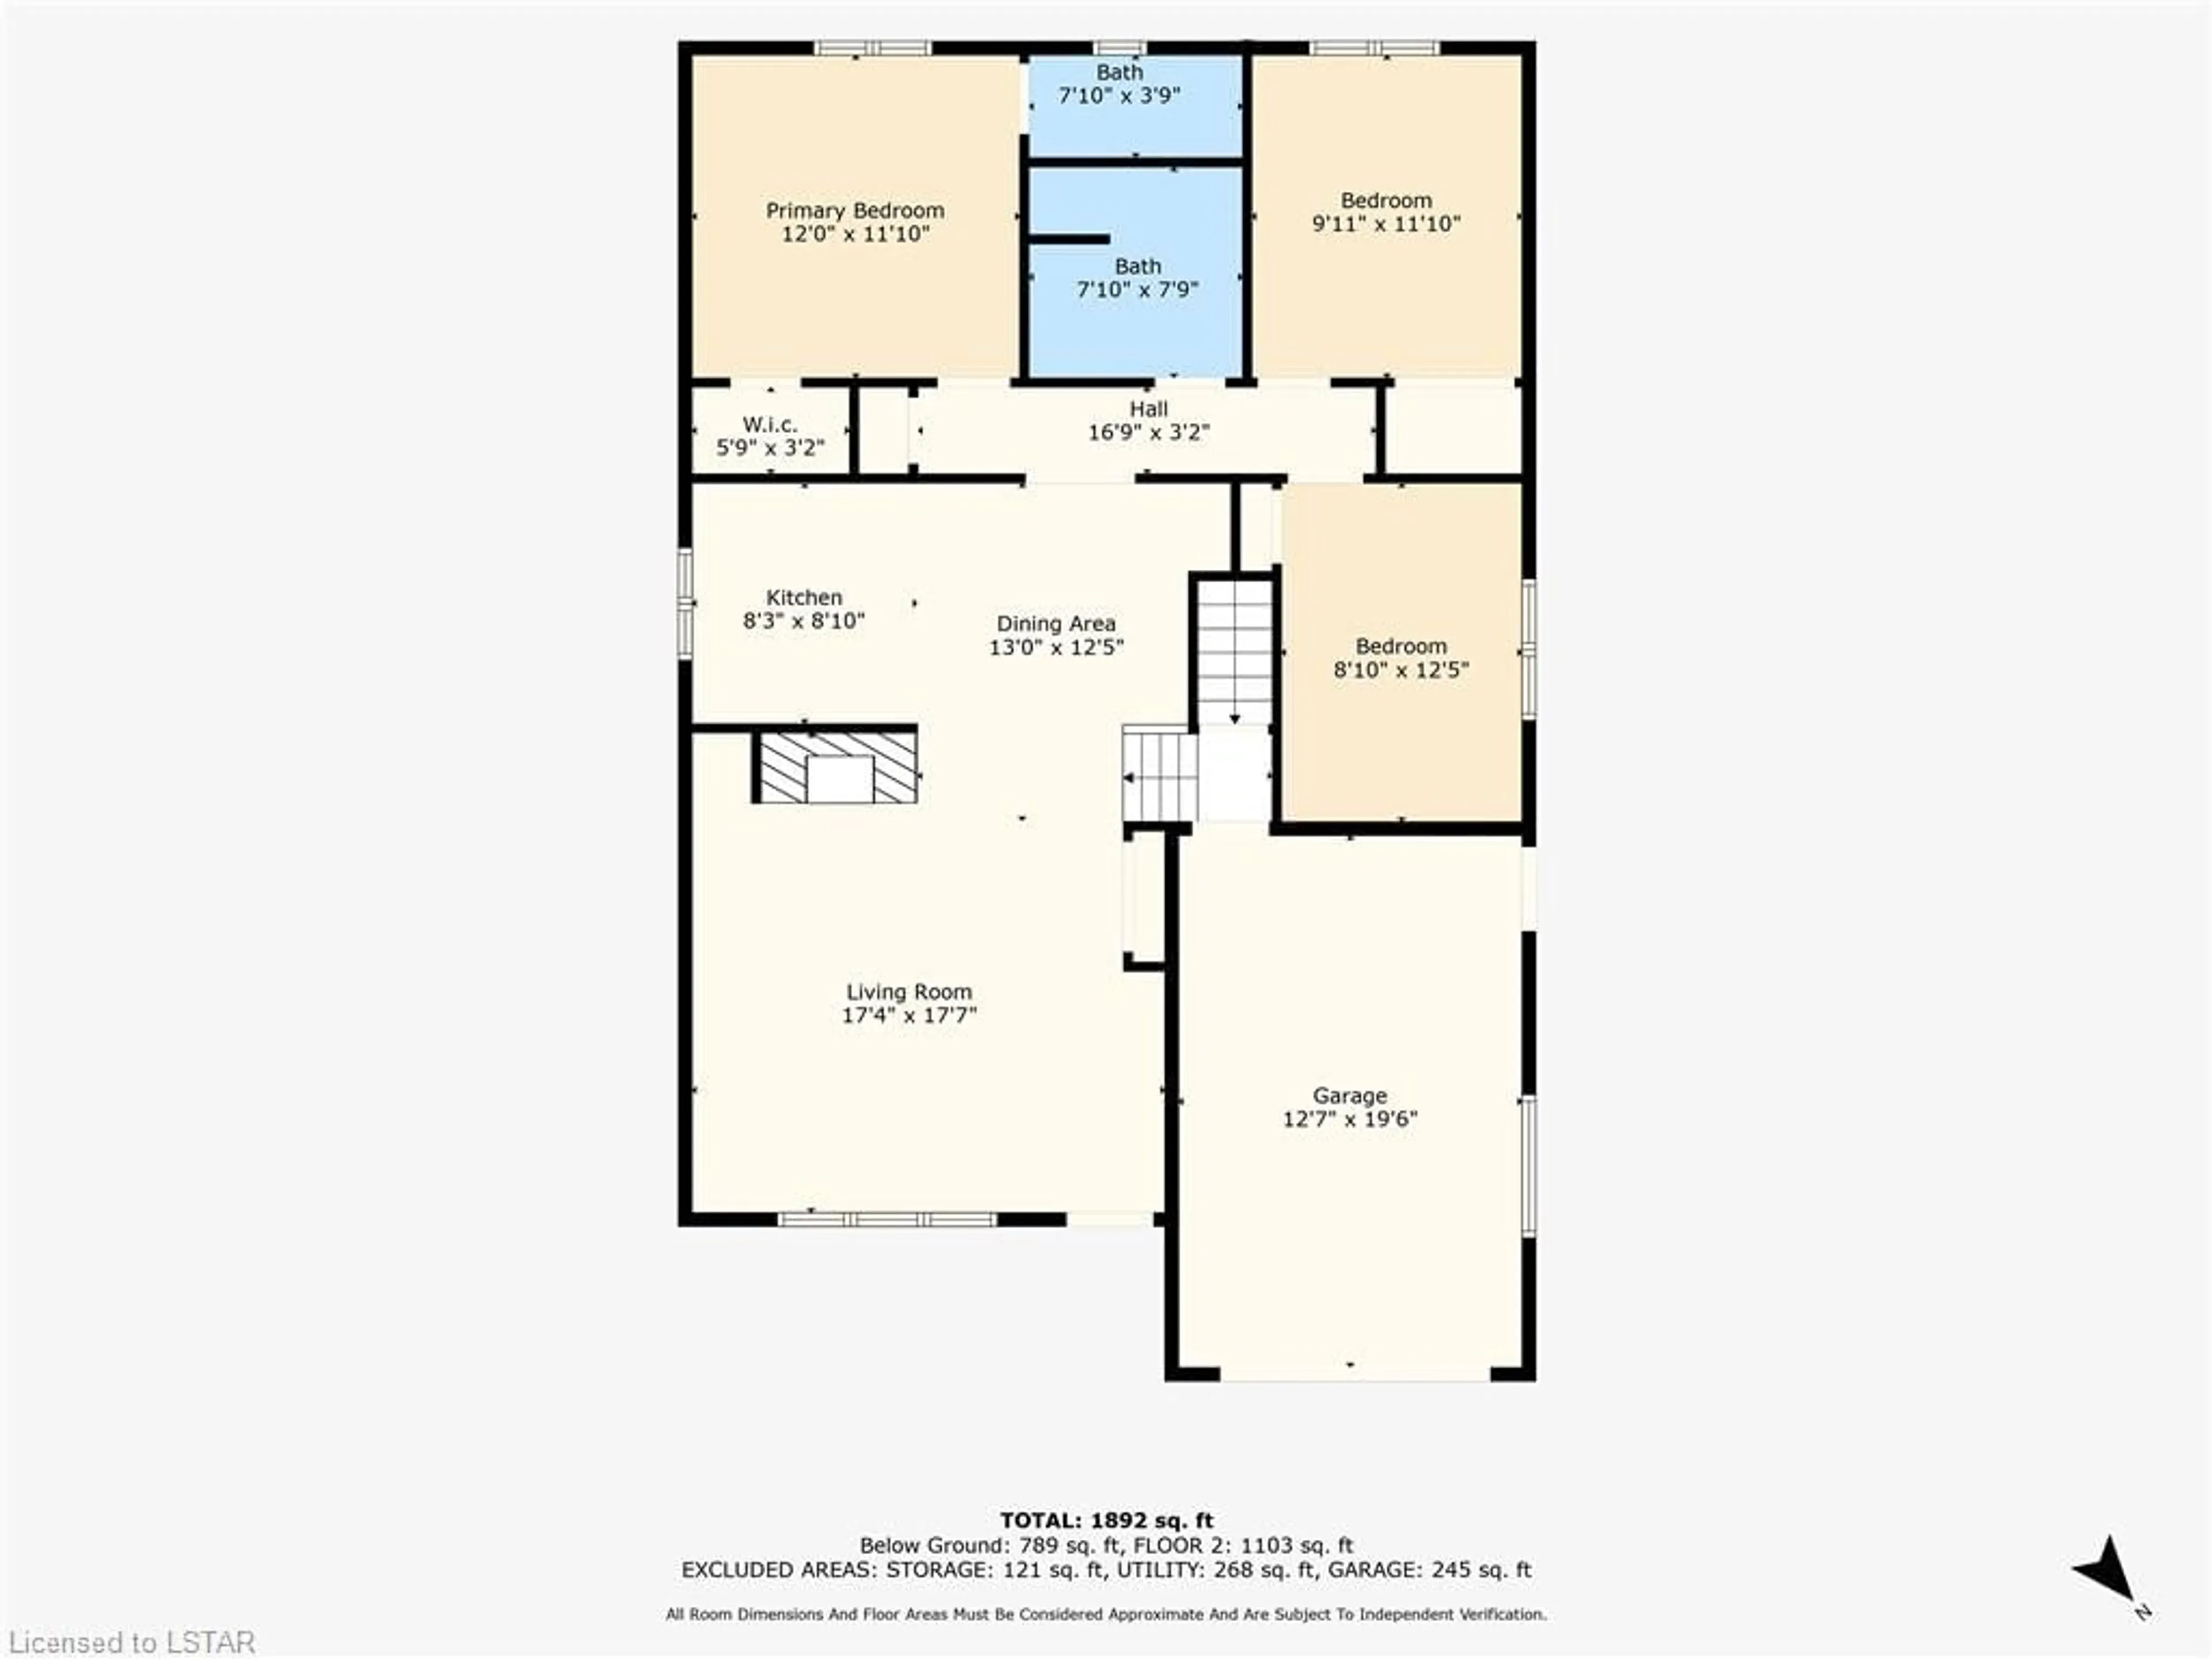 Floor plan for 905 Wellingsboro Rd, London Ontario N6E 1N4